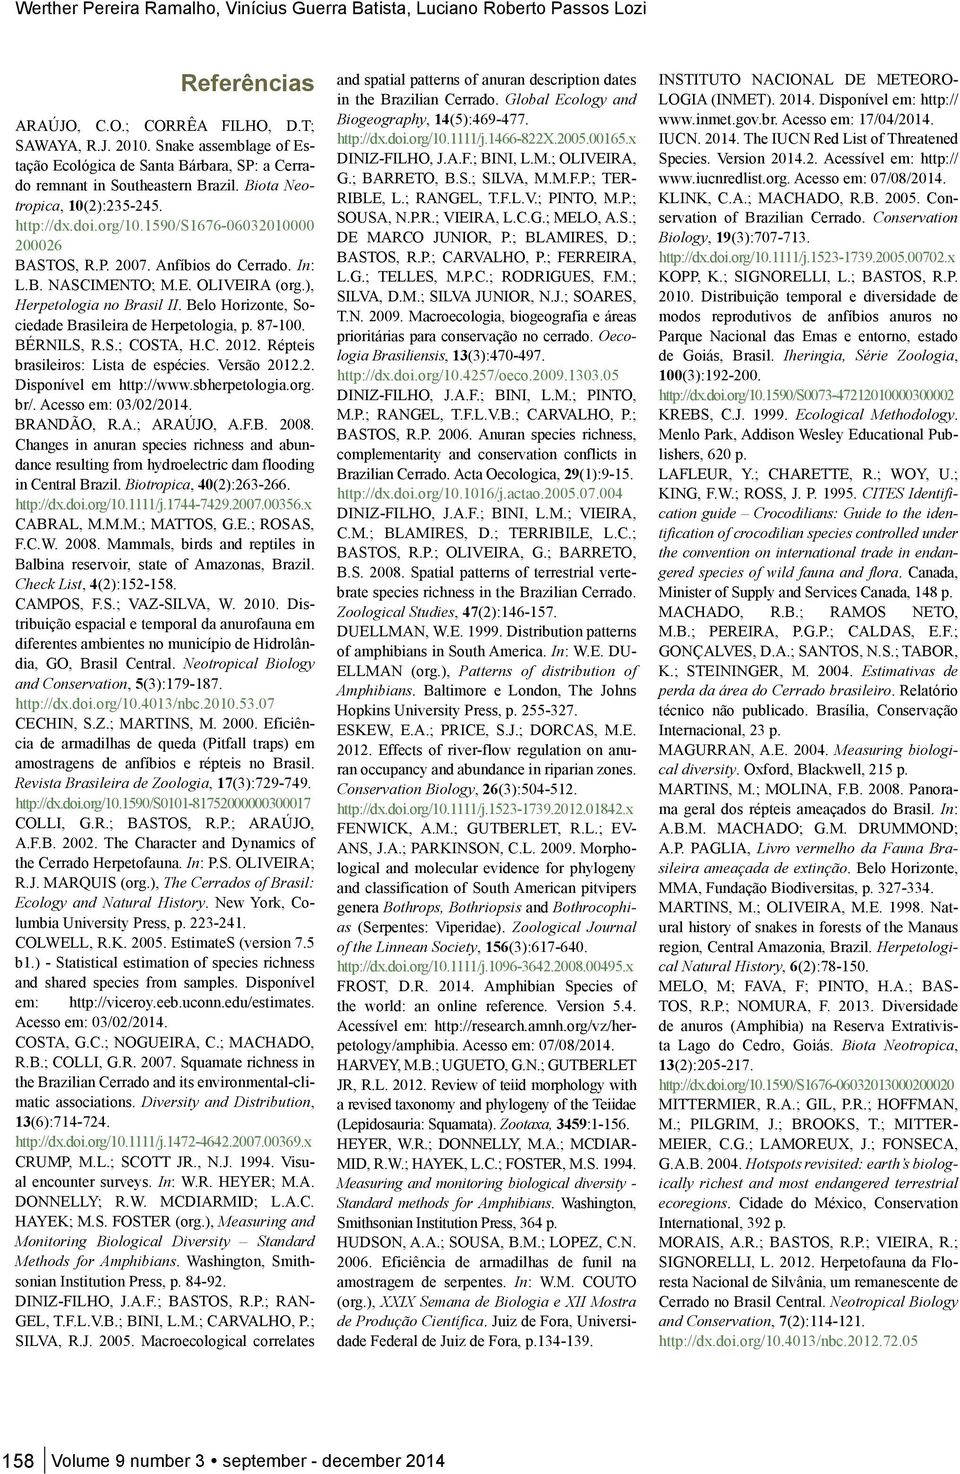 Anfíbios do Cerrado. In: L.B. NASCIMENTO; M.E. OLIVEIRA (org.), Herpetologia no Brasil II. Belo Horizonte, Sociedade Brasileira de Herpetologia, p. 87-100. BÉRNILS, R.S.; COSTA, H.C. 2012.